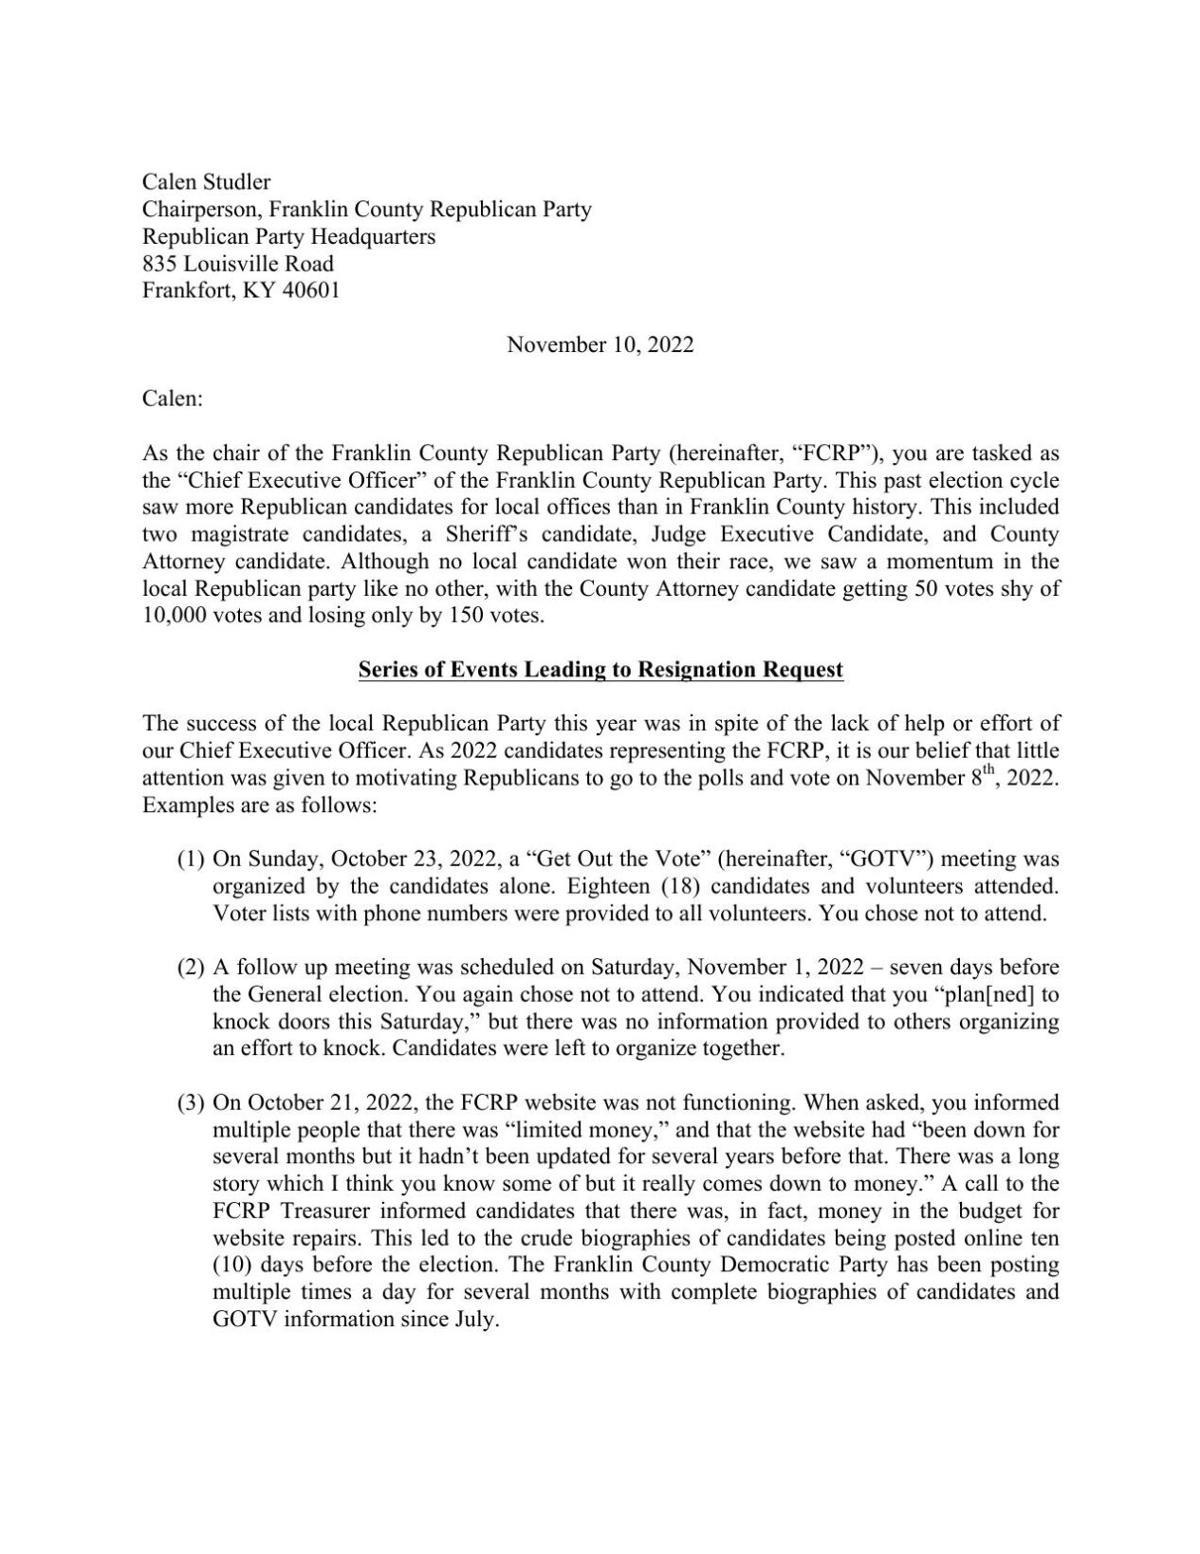 Letter seeking Calen Studler's resignation